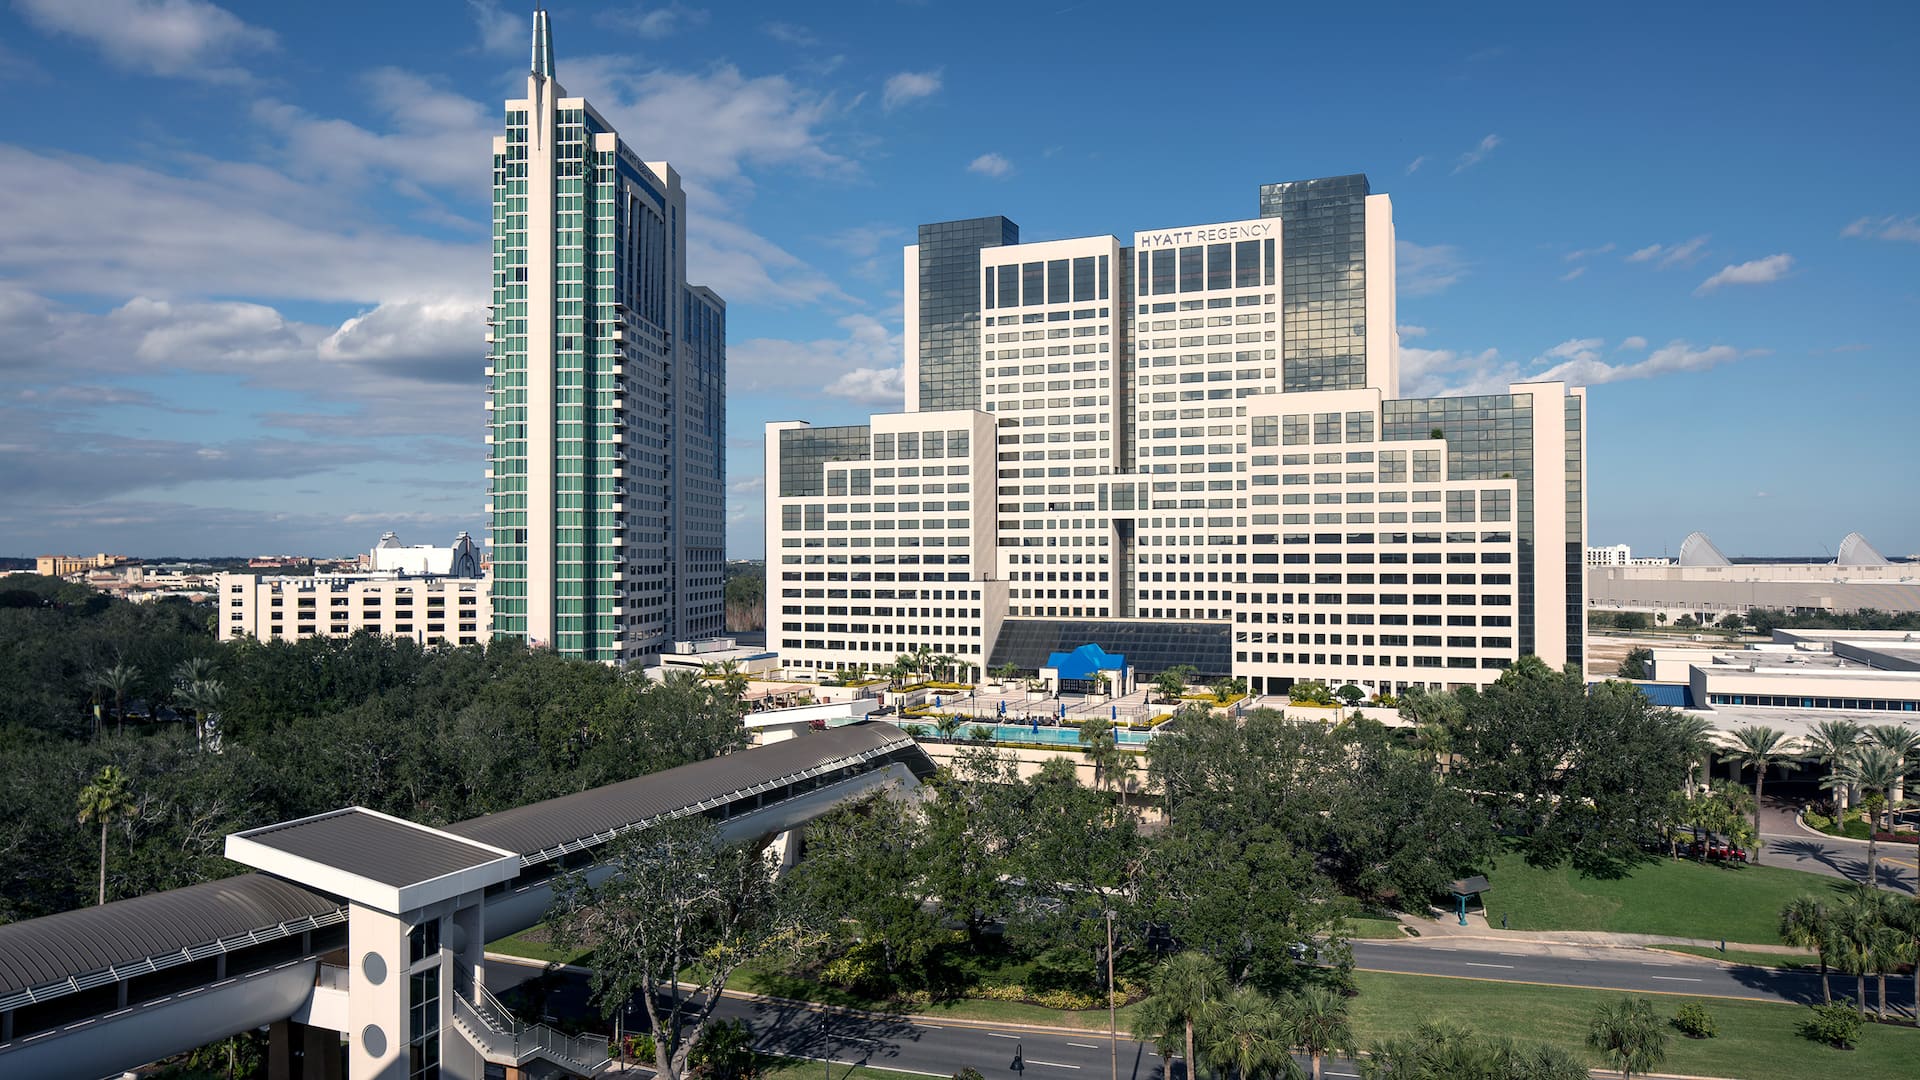 4Star Hotels in Orlando Florida on International Drive Hyatt Regency